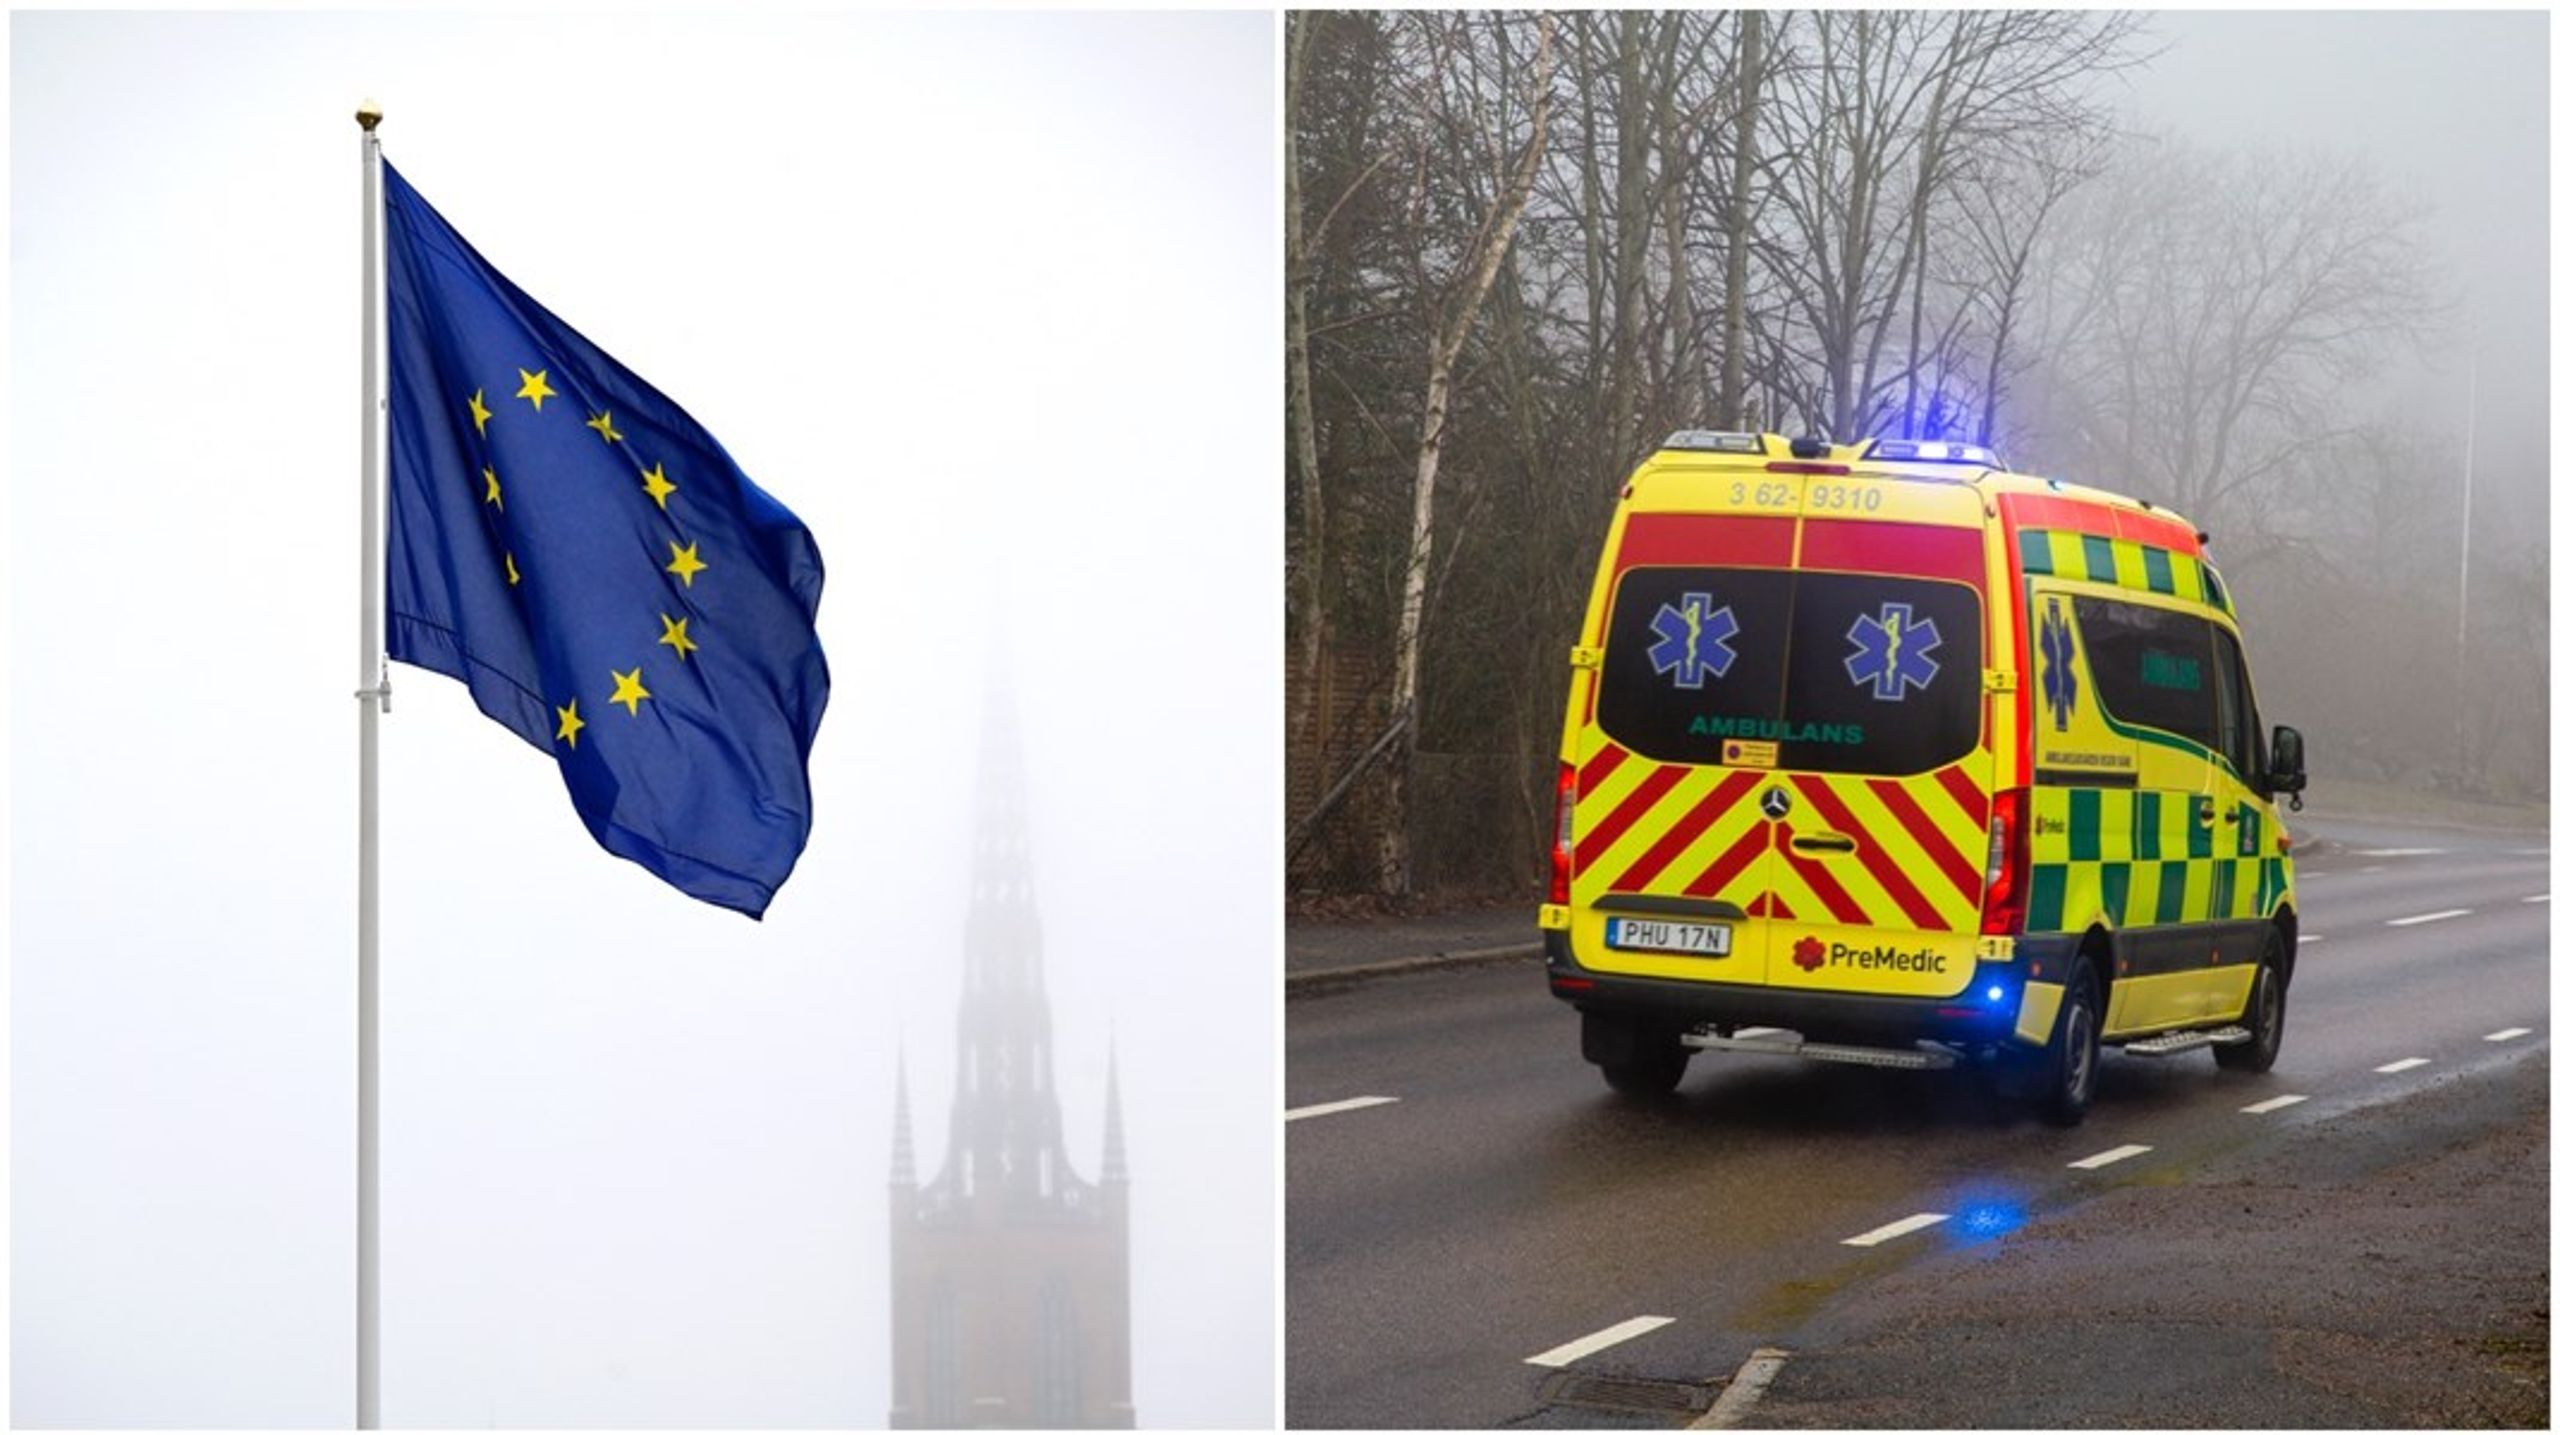 EU:s arbetstidsdirektiv har ökat personalbristen inom ambulansverksamheten,&nbsp;menar debattörerna.